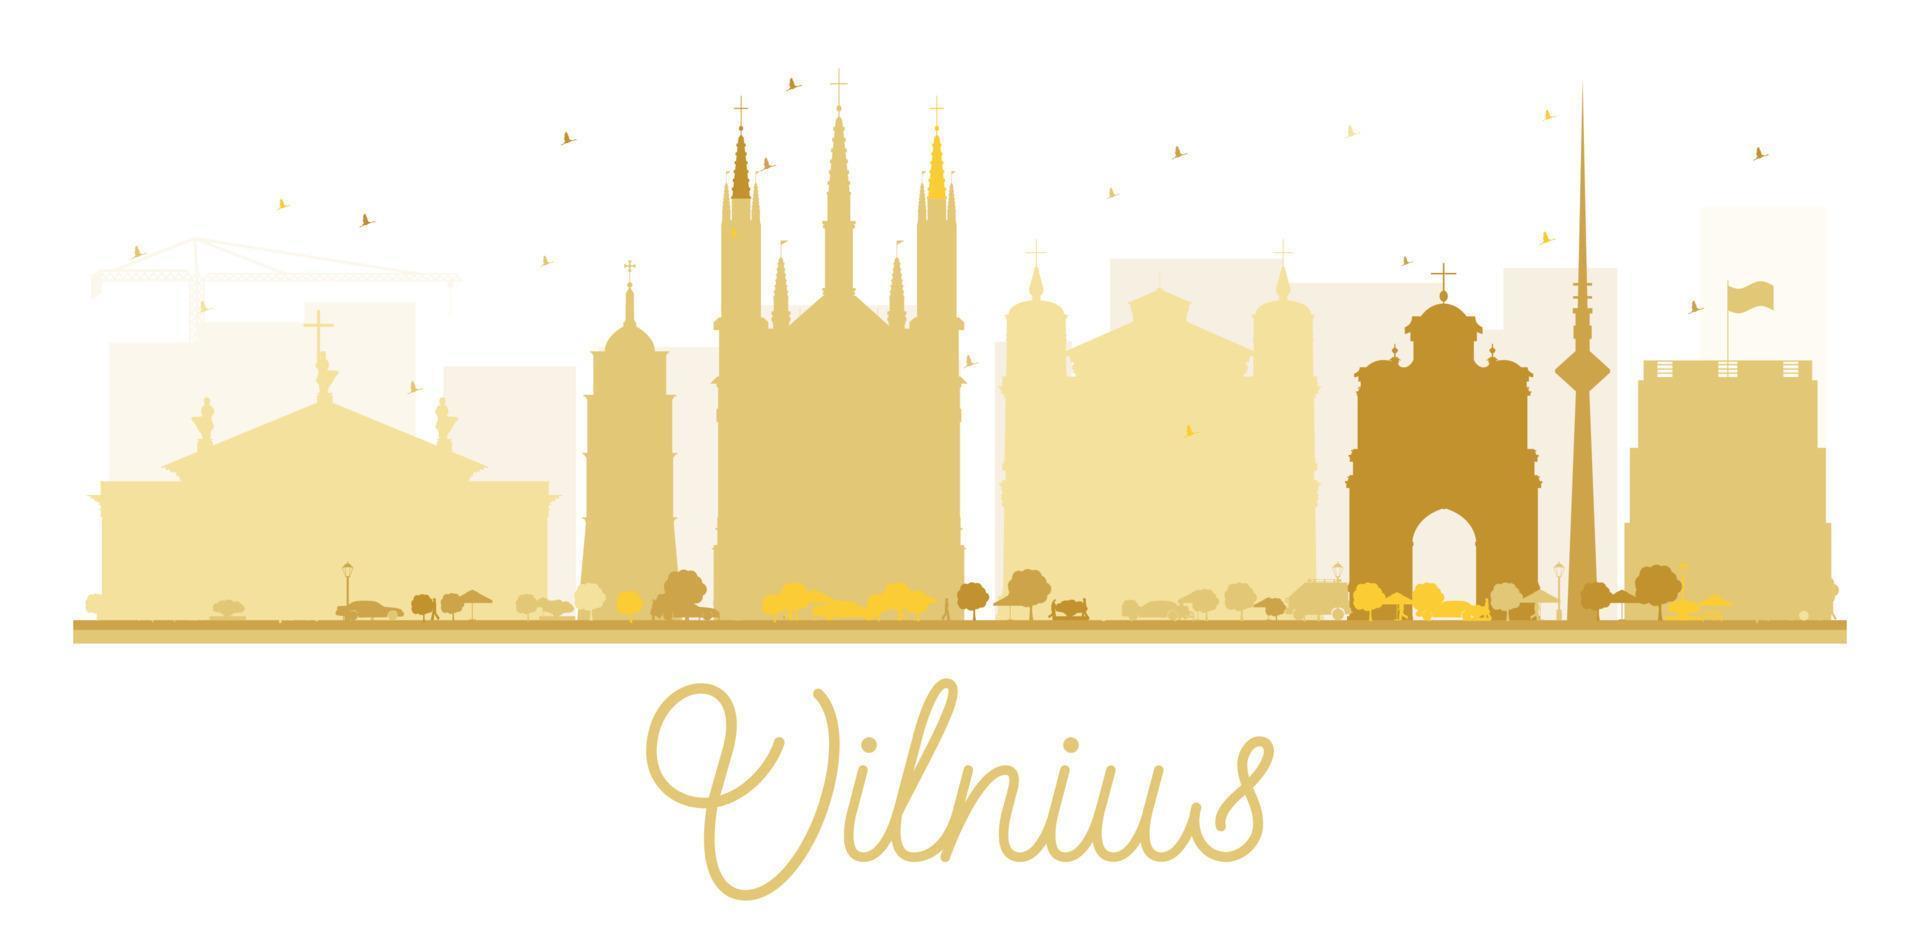 goldene silhouette der skyline der stadt vilnius. vektor